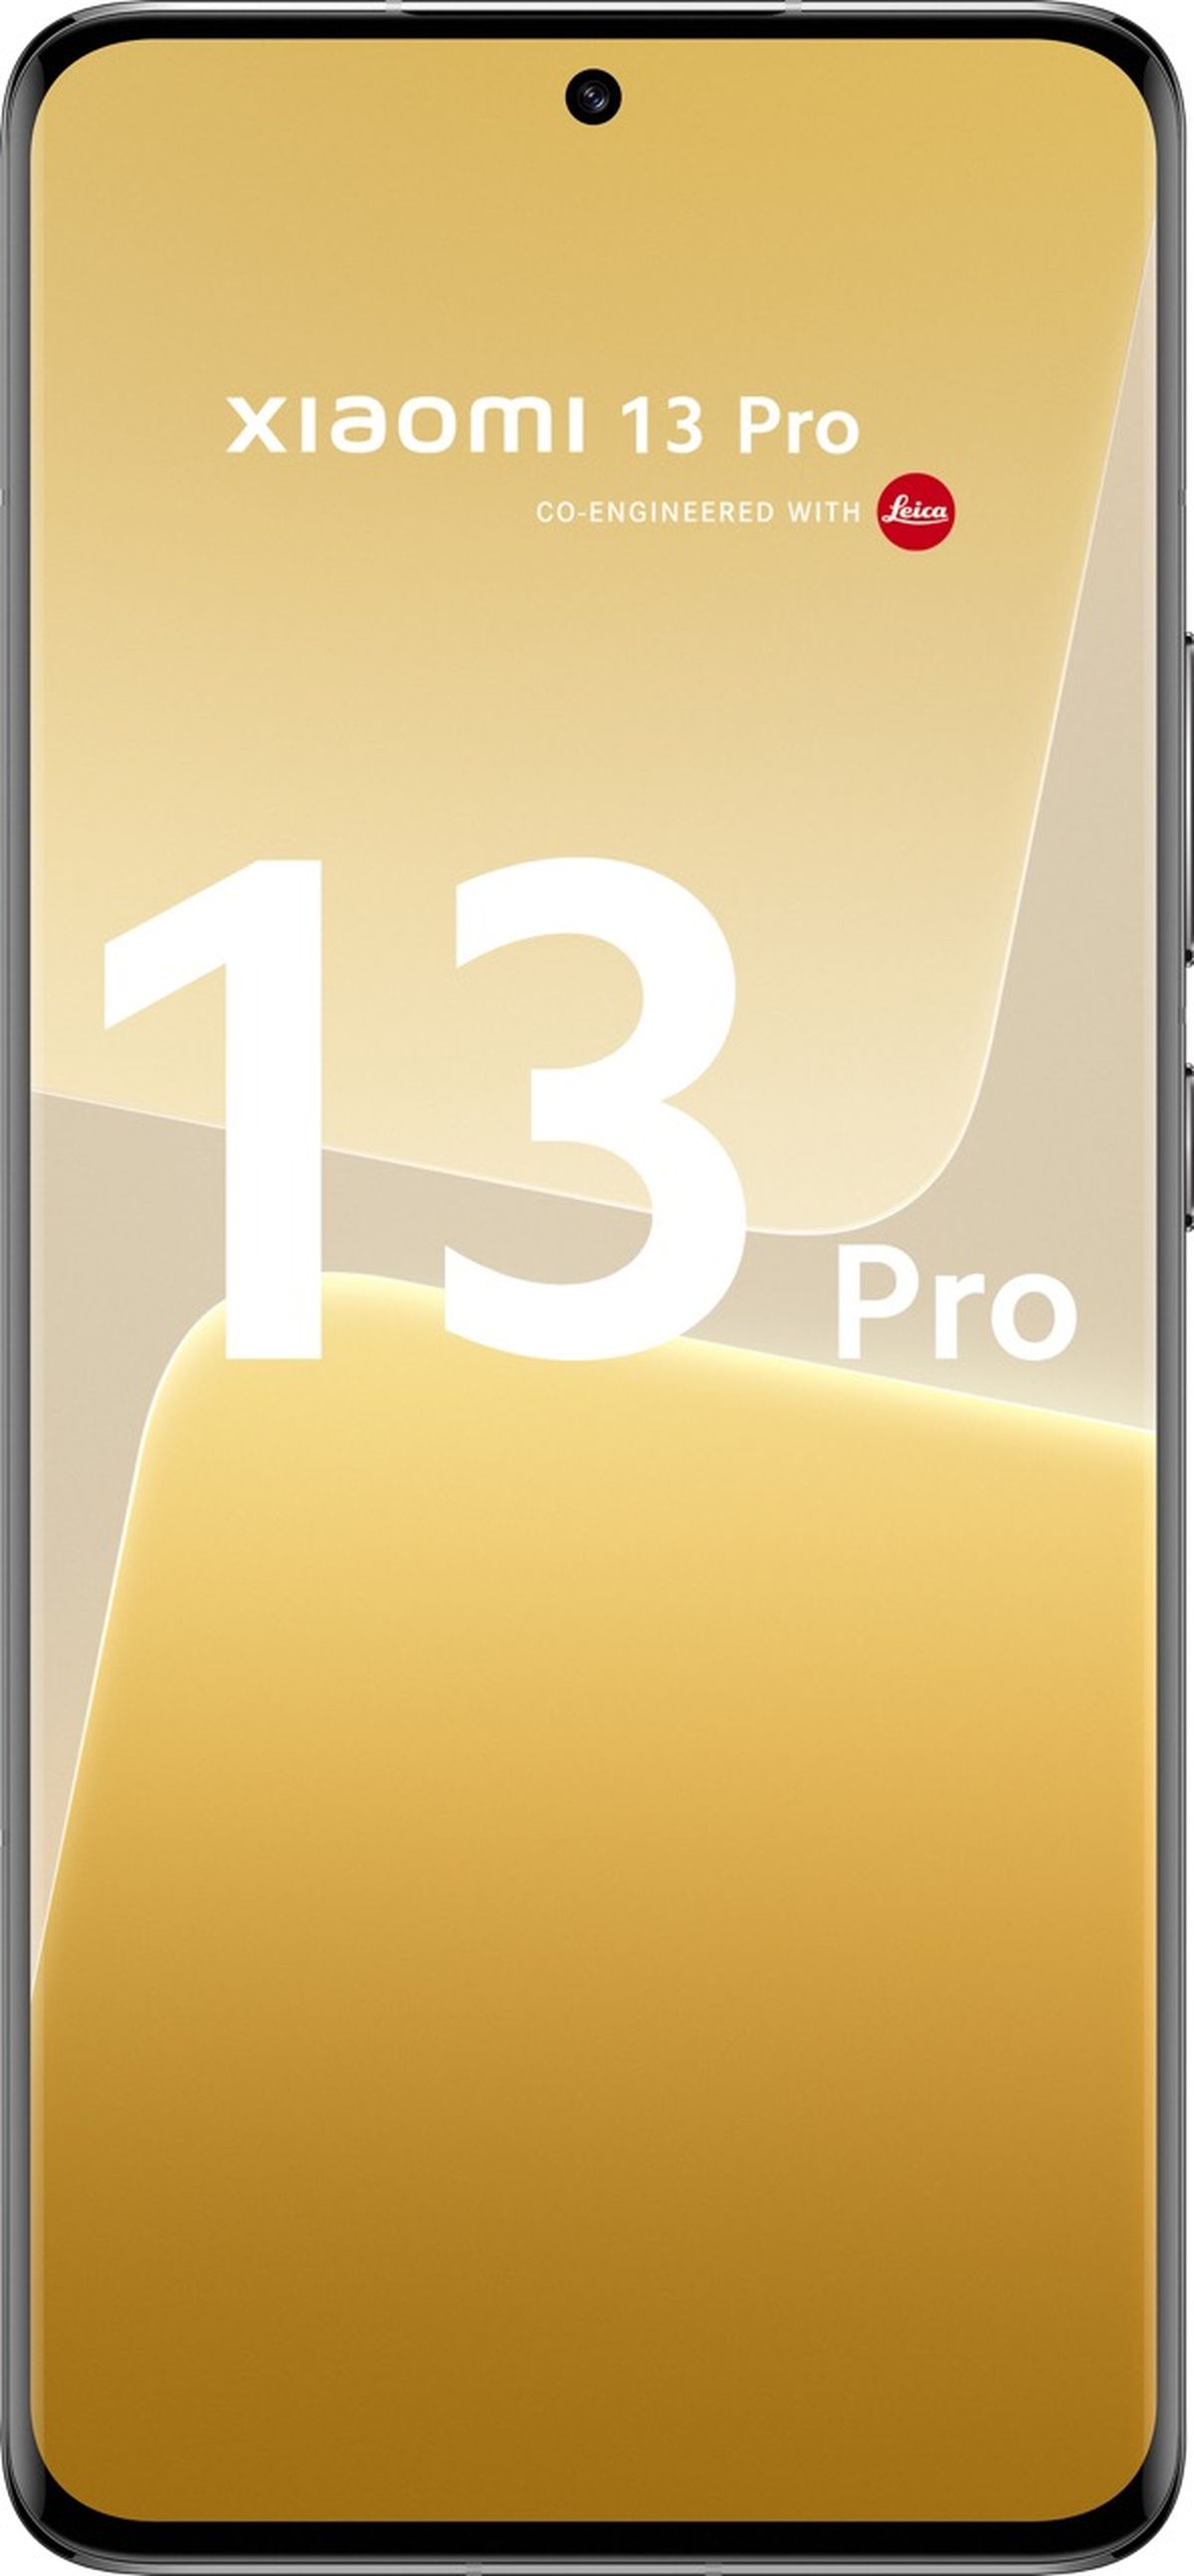 Xiaomi 13 Pro review - análisis con opinión y características